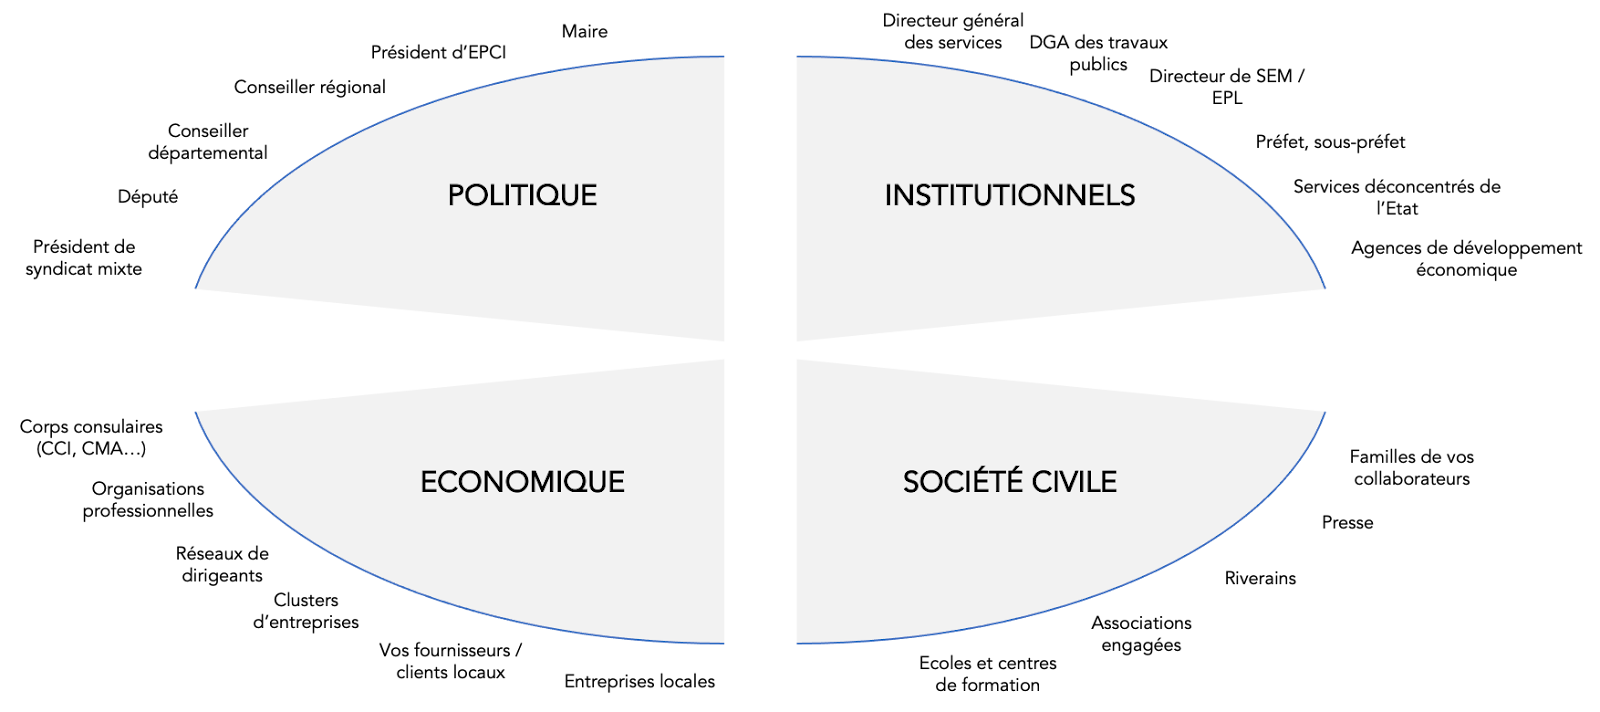 Présentation des 4 piliers de la cartogrpahie des acteurs : Politique, Institutionnels, societé civile, économique